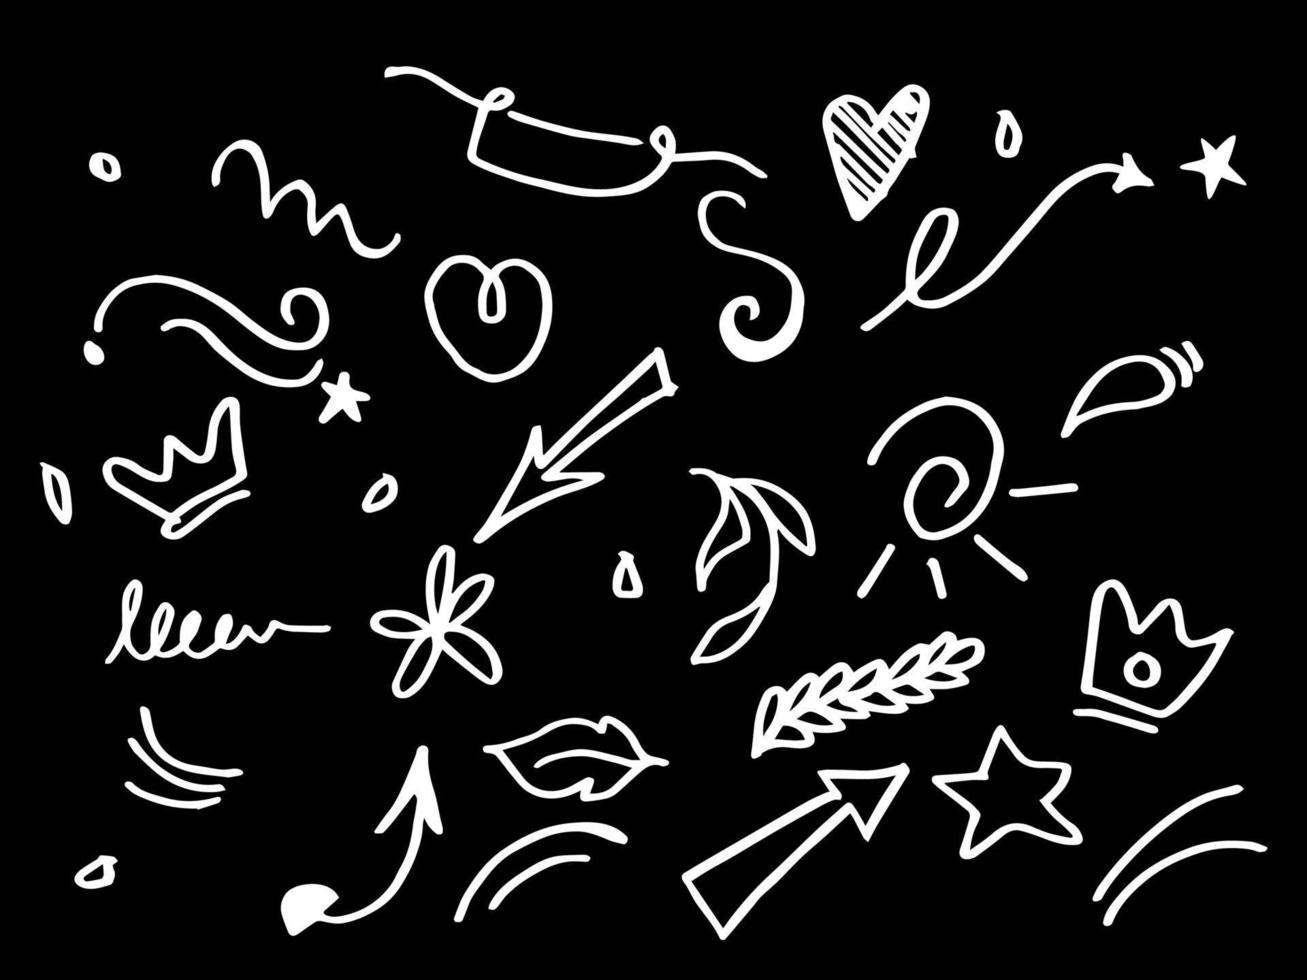 Vektor-Doodle-Sammlung von Gestaltungselementen. lockiges Swishes, Swoops, Strudel, Pfeil, Herz, Liebe, Krone, Blume, Stern, Feuerwerk, Hervorhebungstext und Hervorhebungselement. für Konzeptdesign verwenden vektor